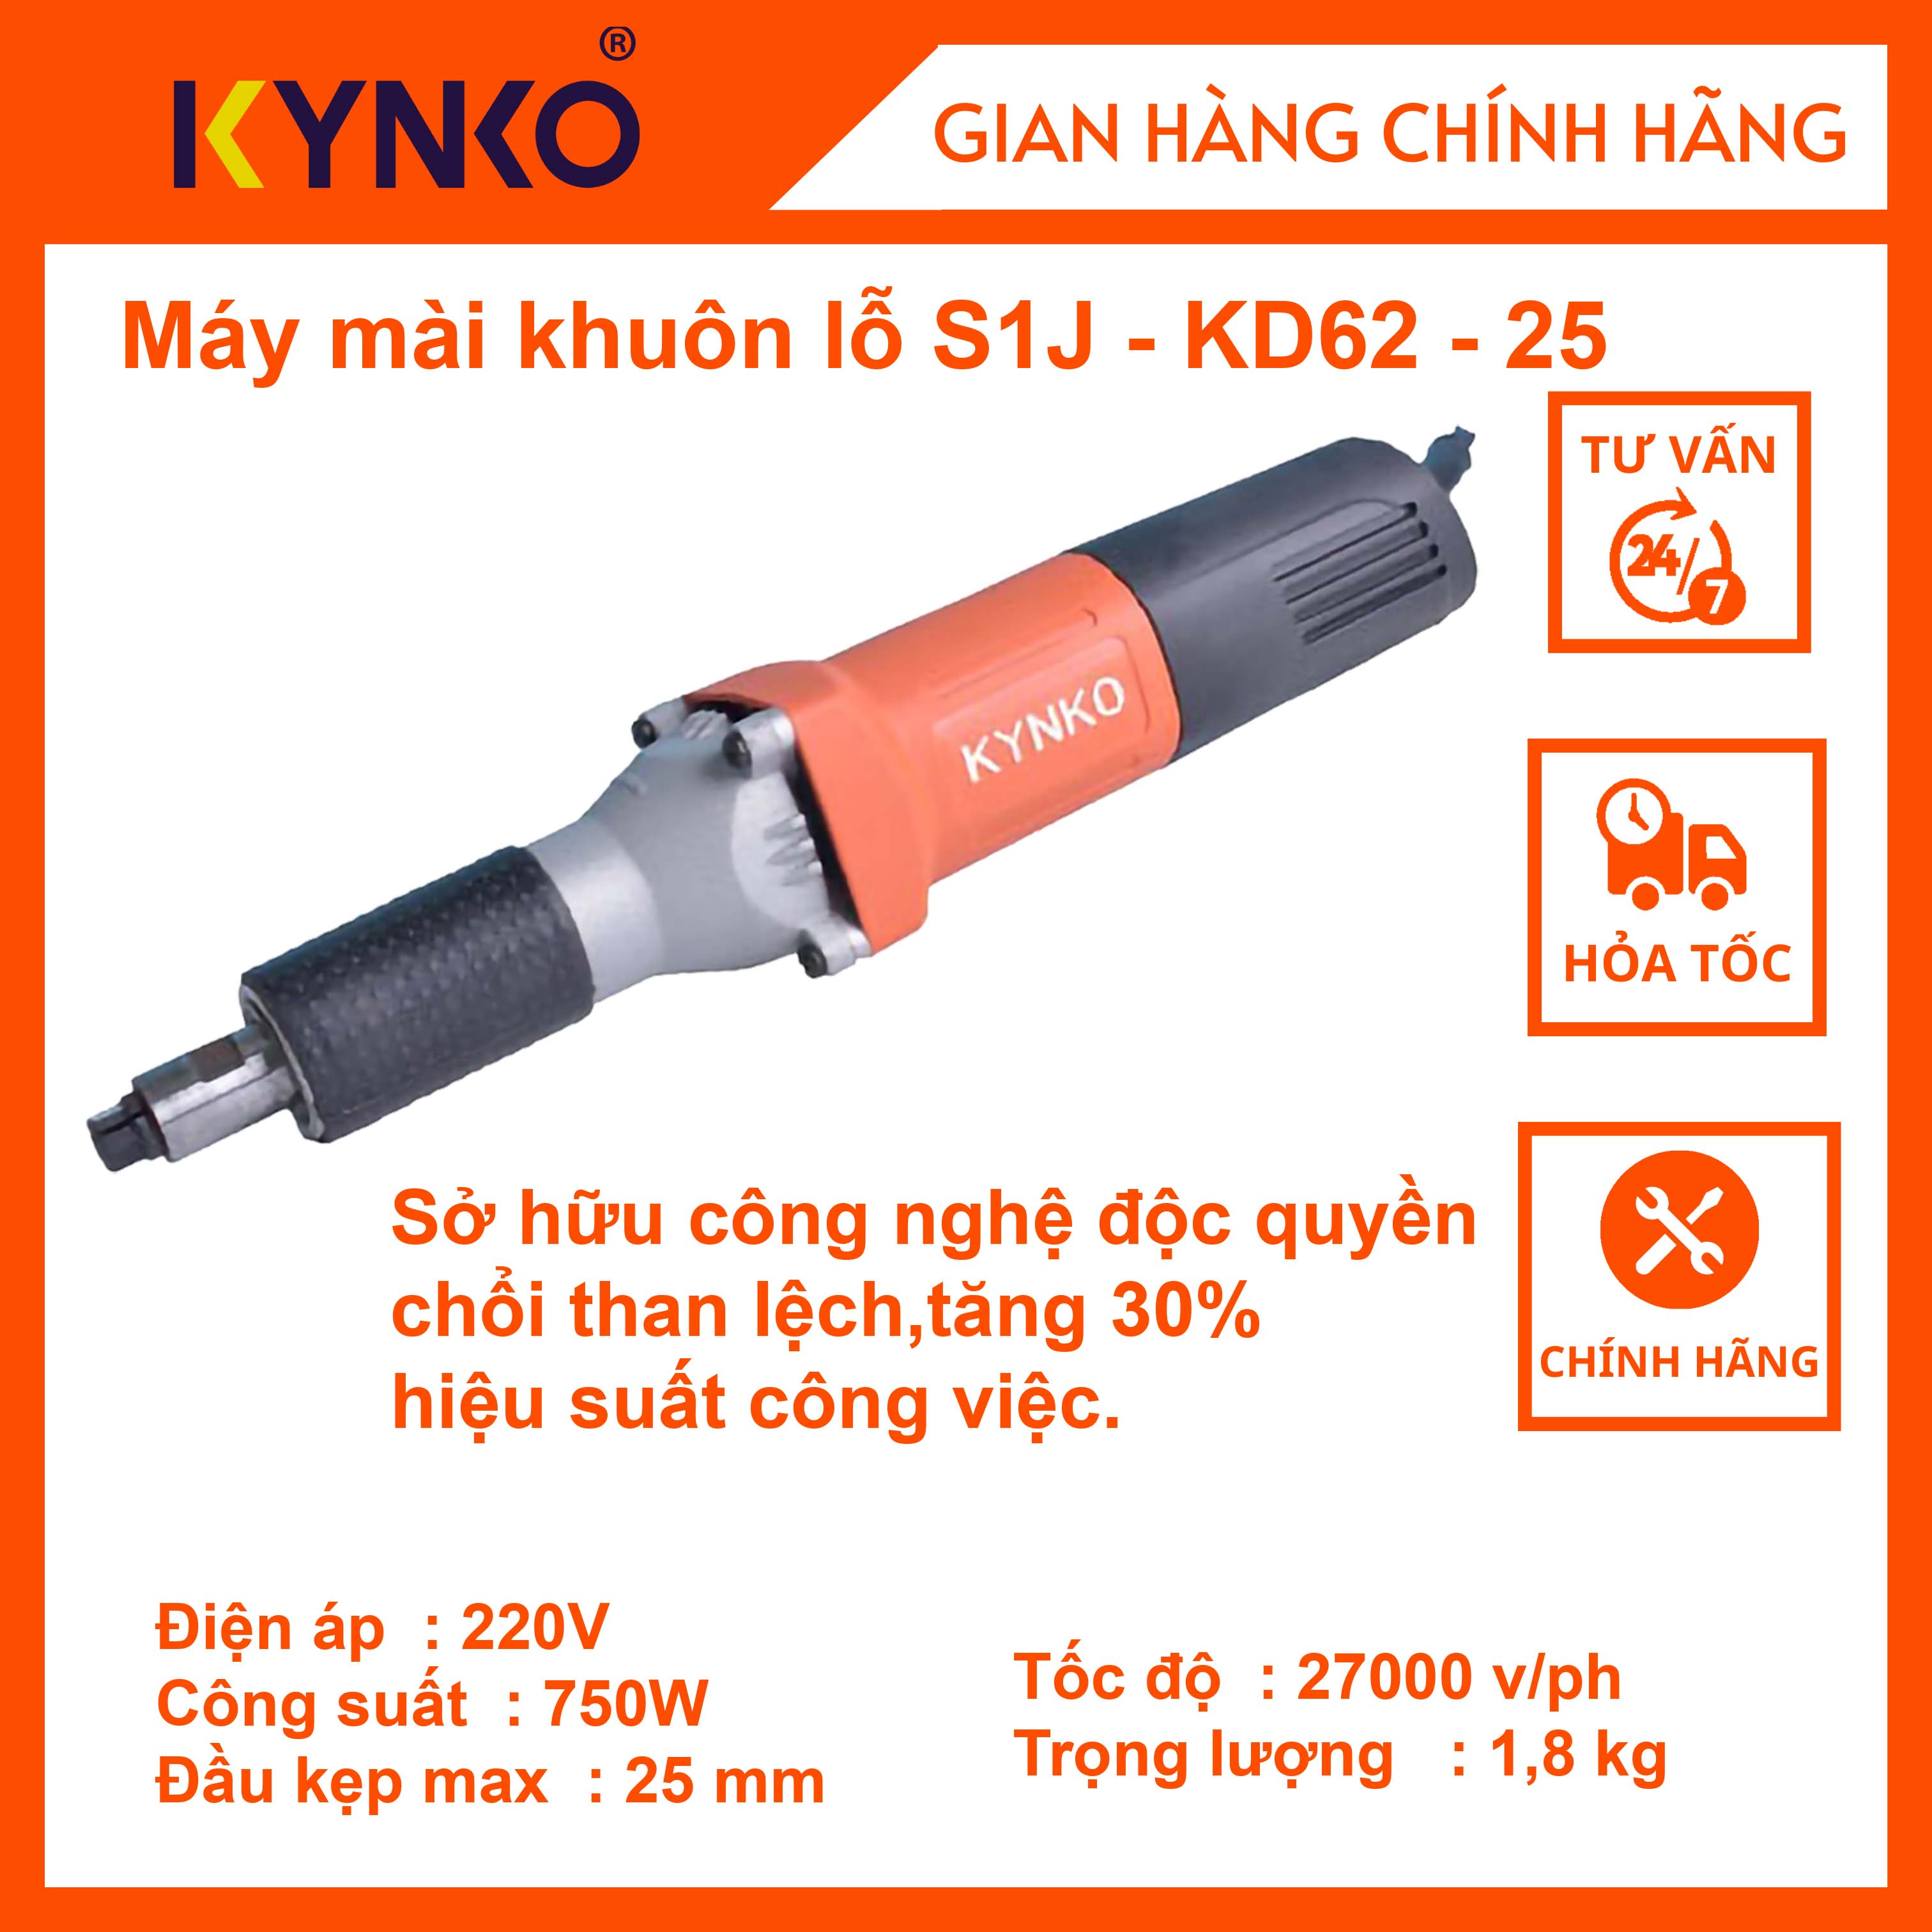 Máy mài khuôn lỗ cầm tay chính hãng Kynko S1J-KD62-25 #6622 #6623 giá tốt